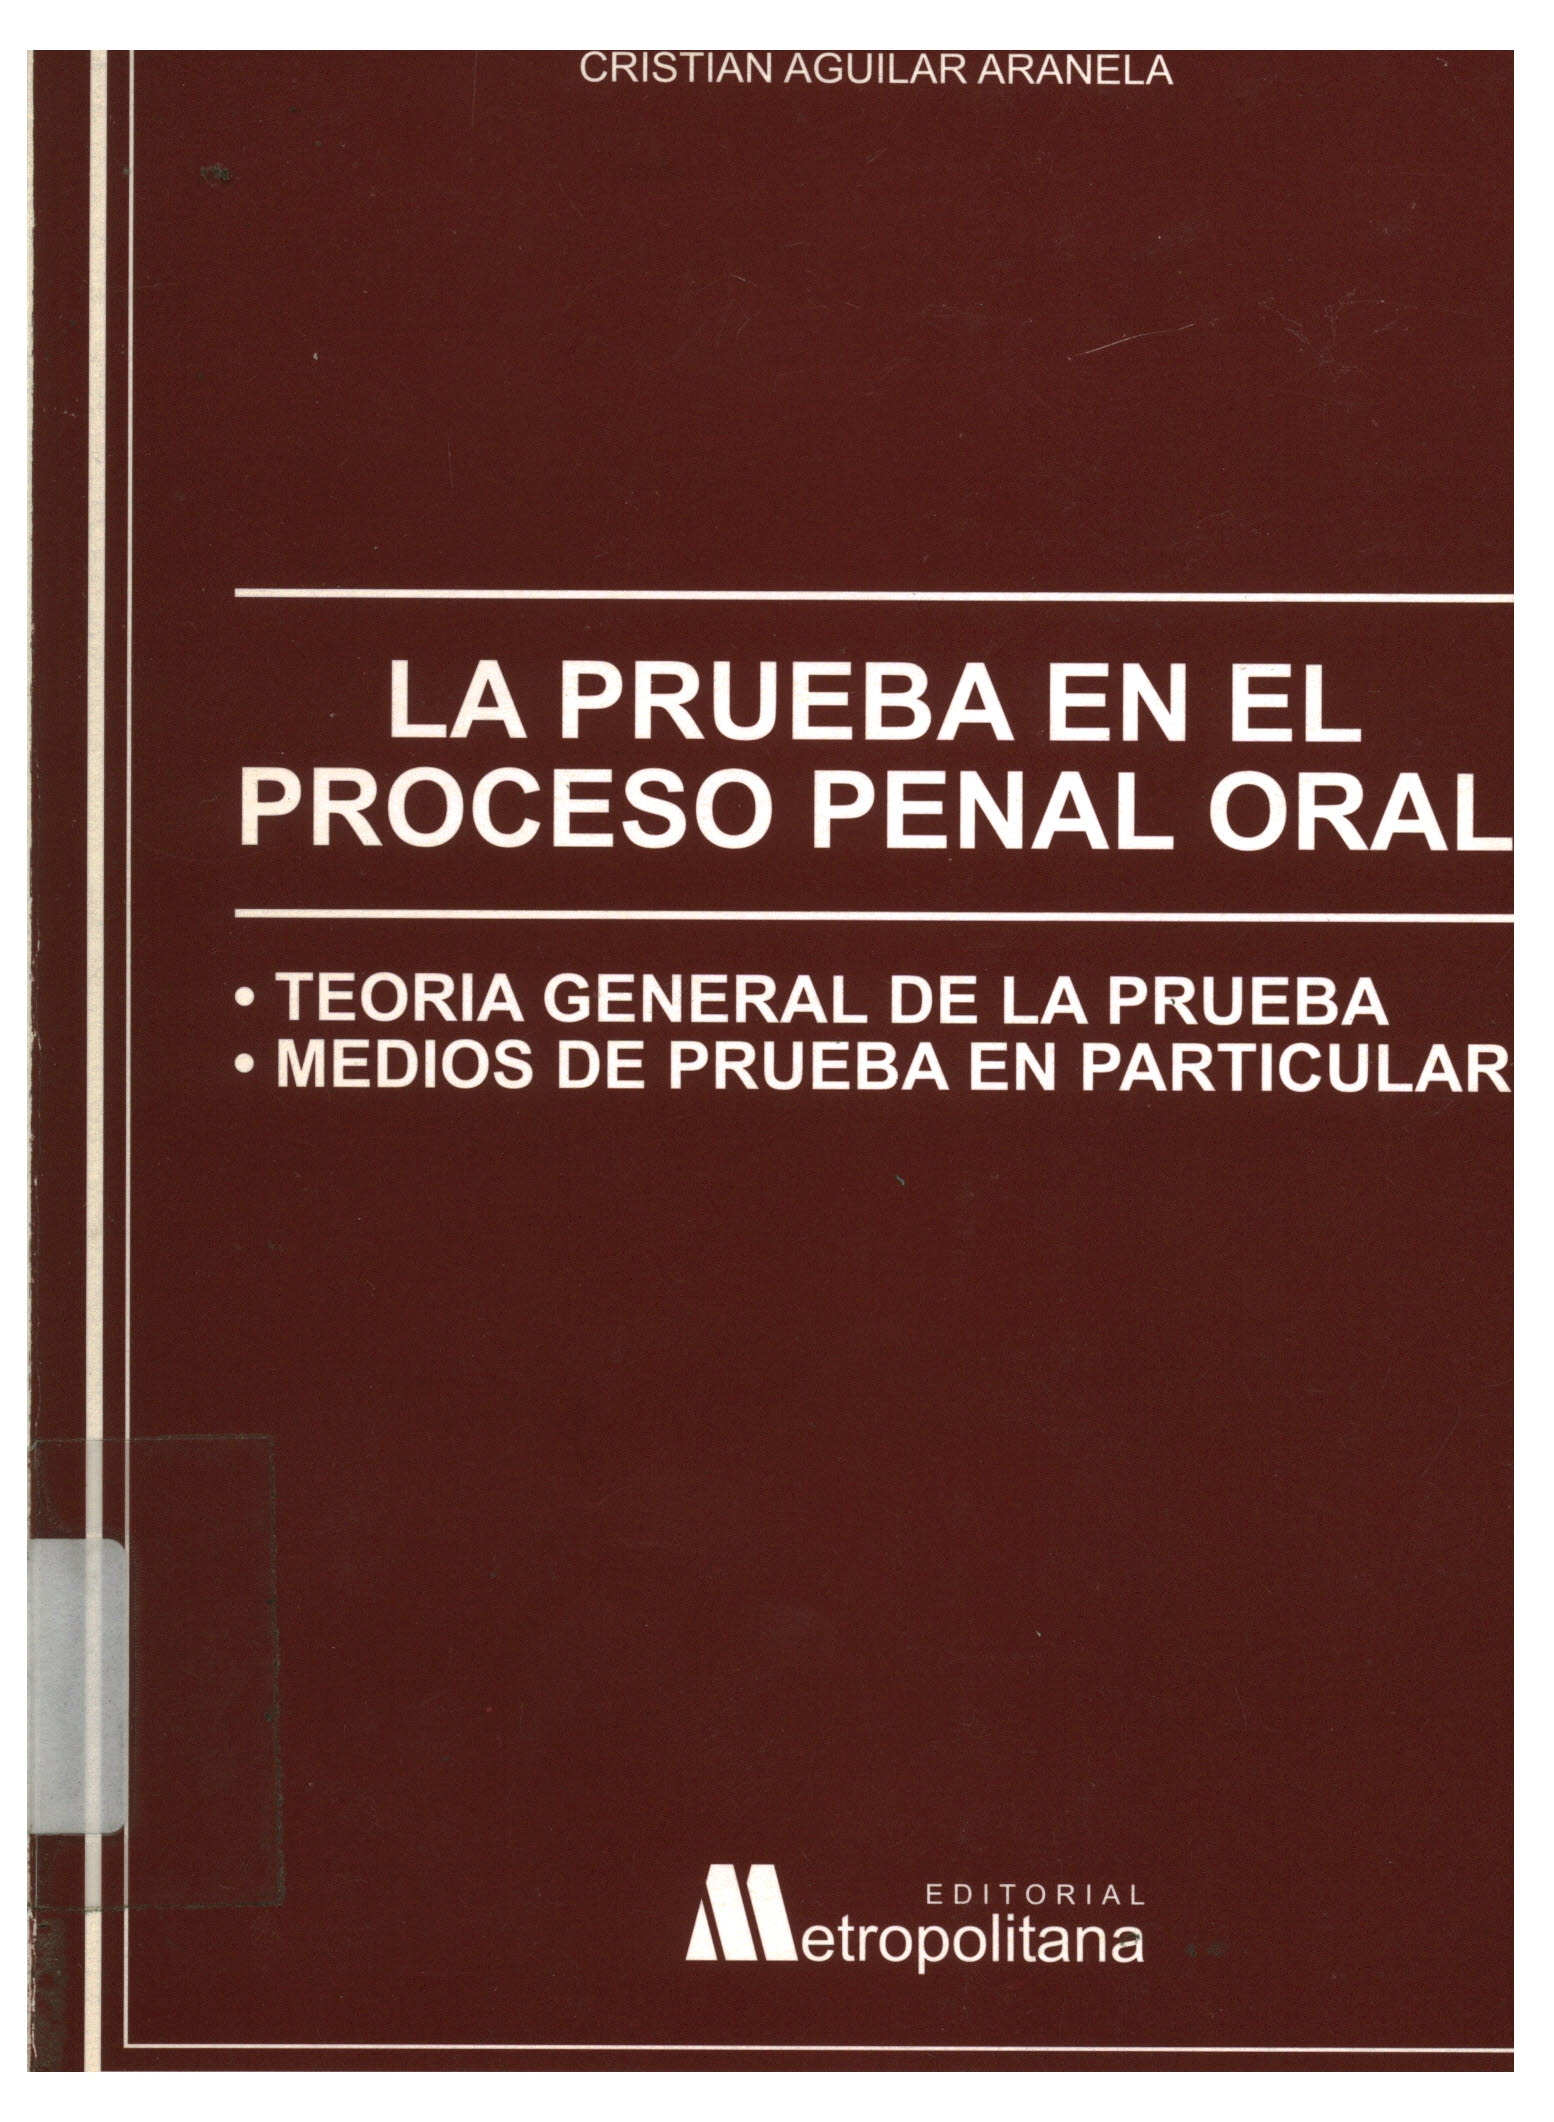 La prueba en el proceso penal oral : teoría general de la prueba. Medios de prueba en particular